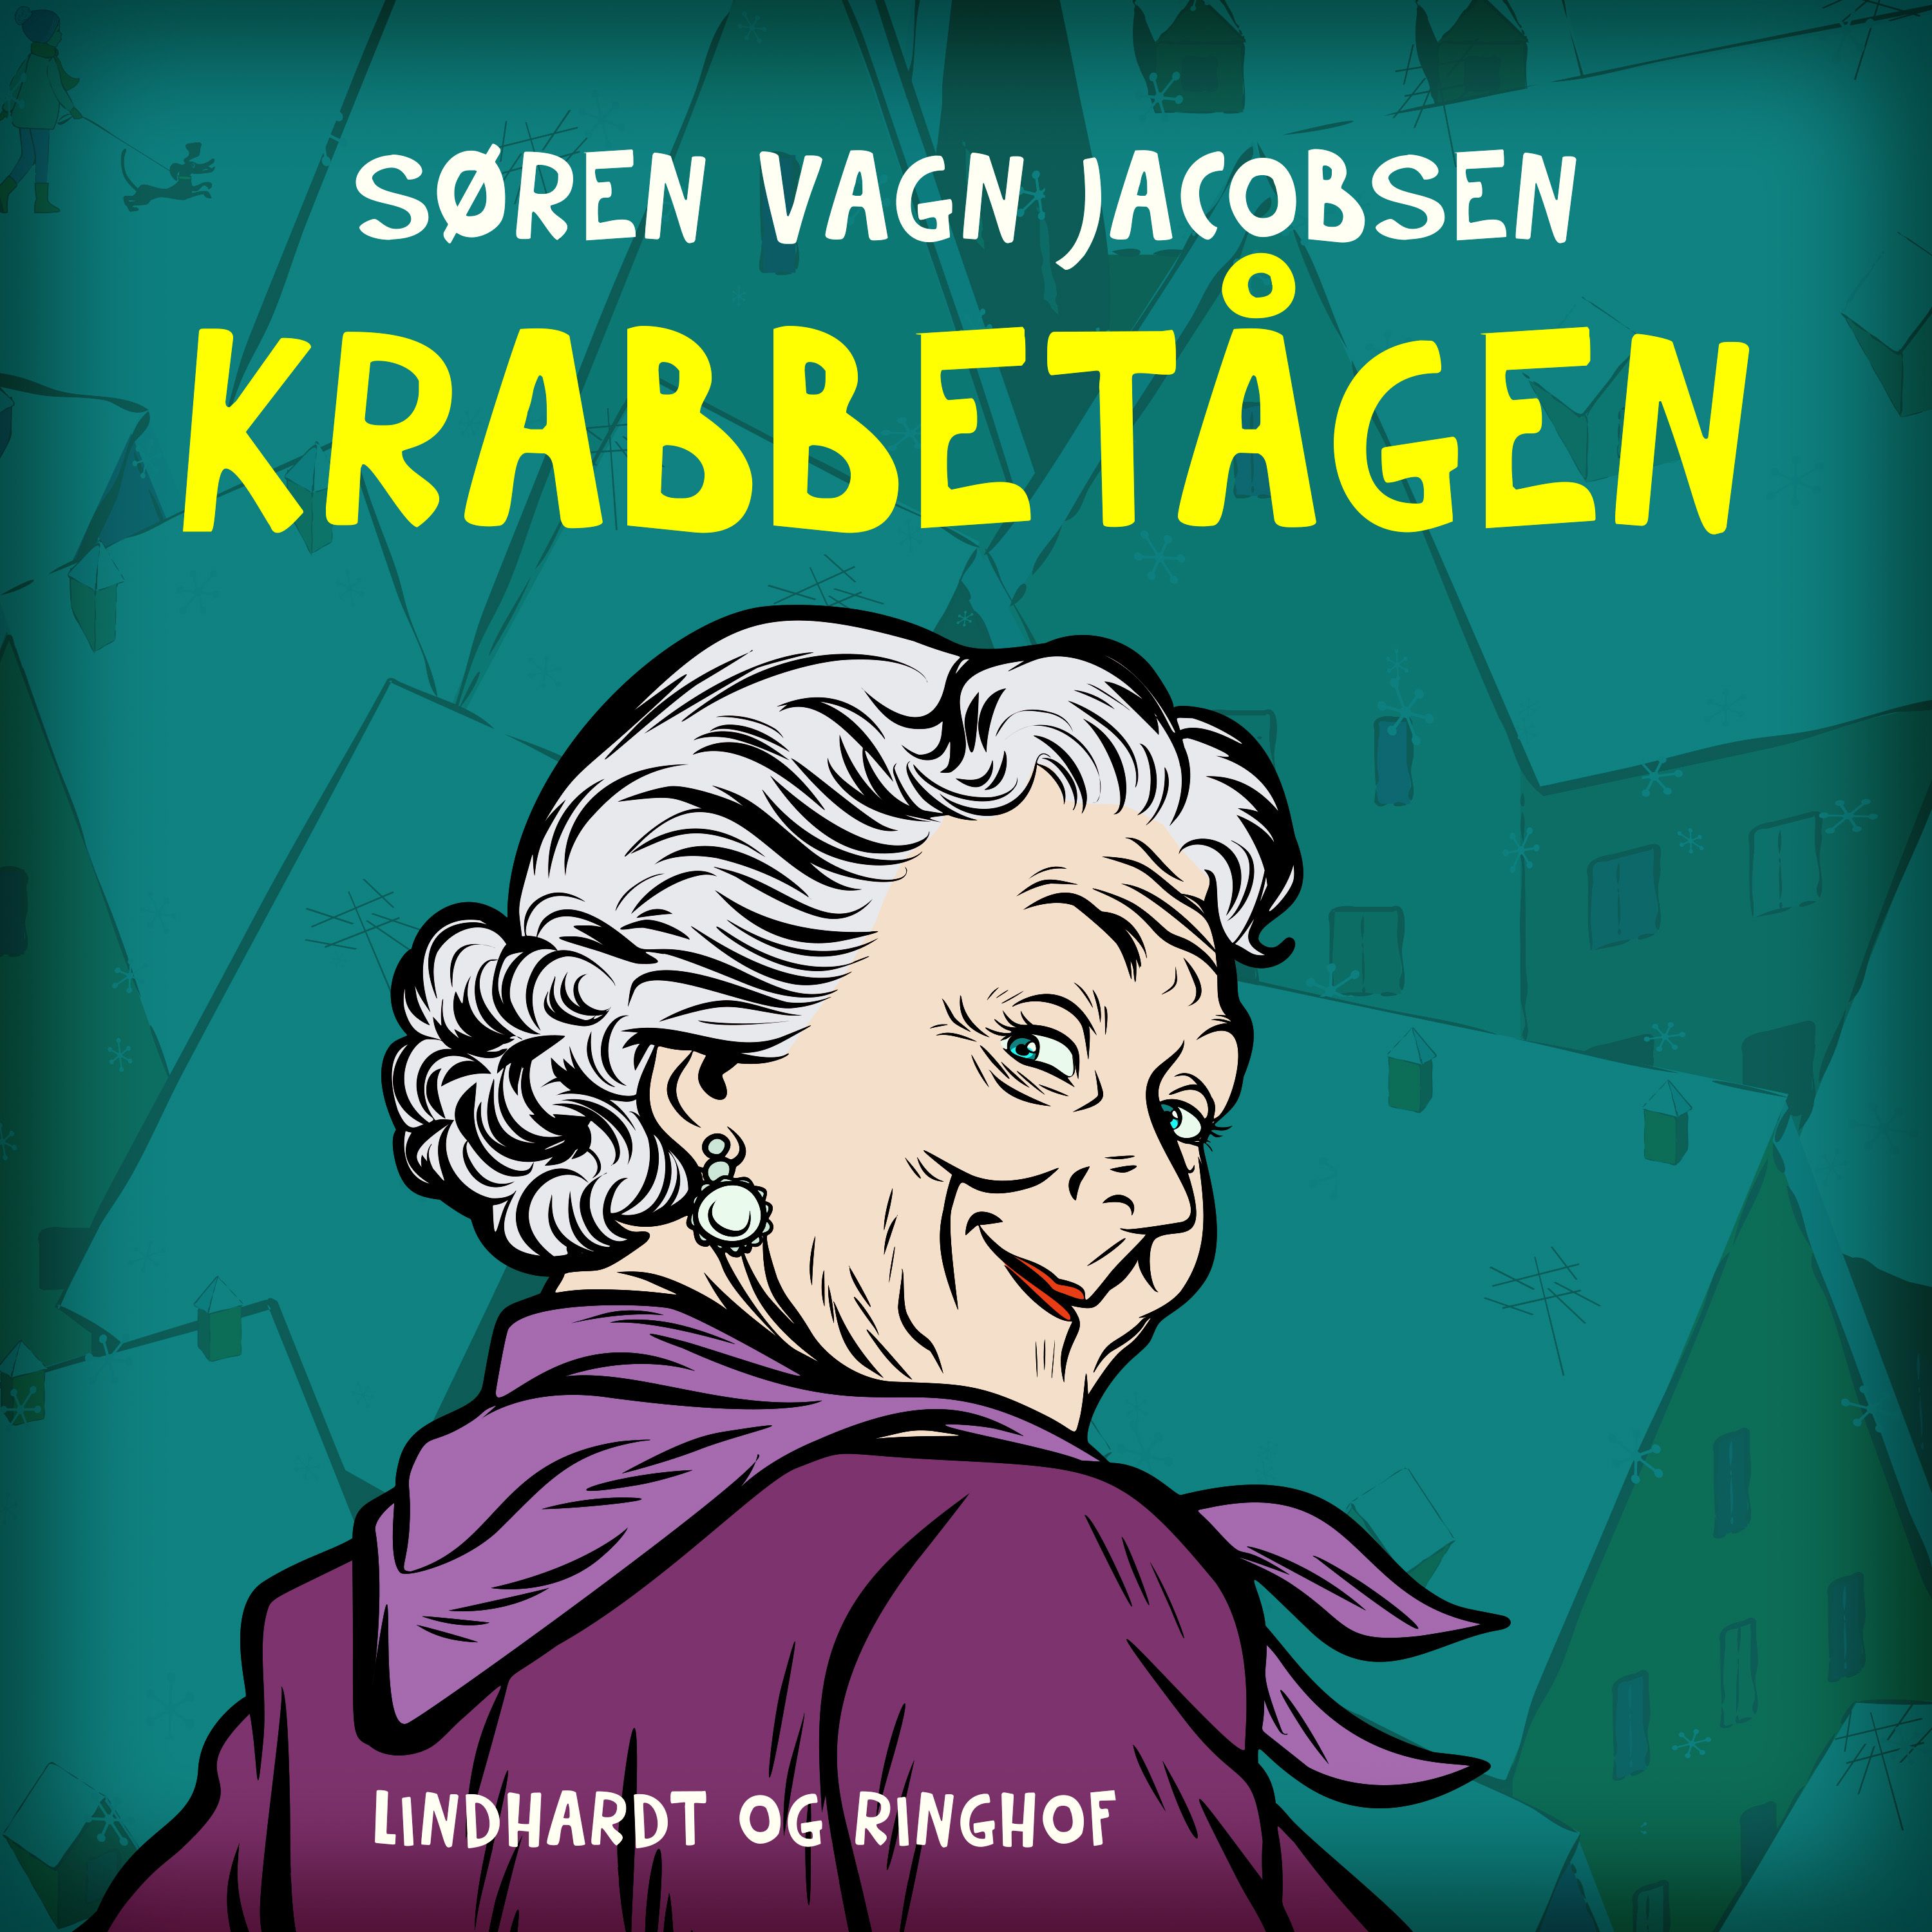 Krabbetågen, ljudbok av Søren vagn Jacobsen